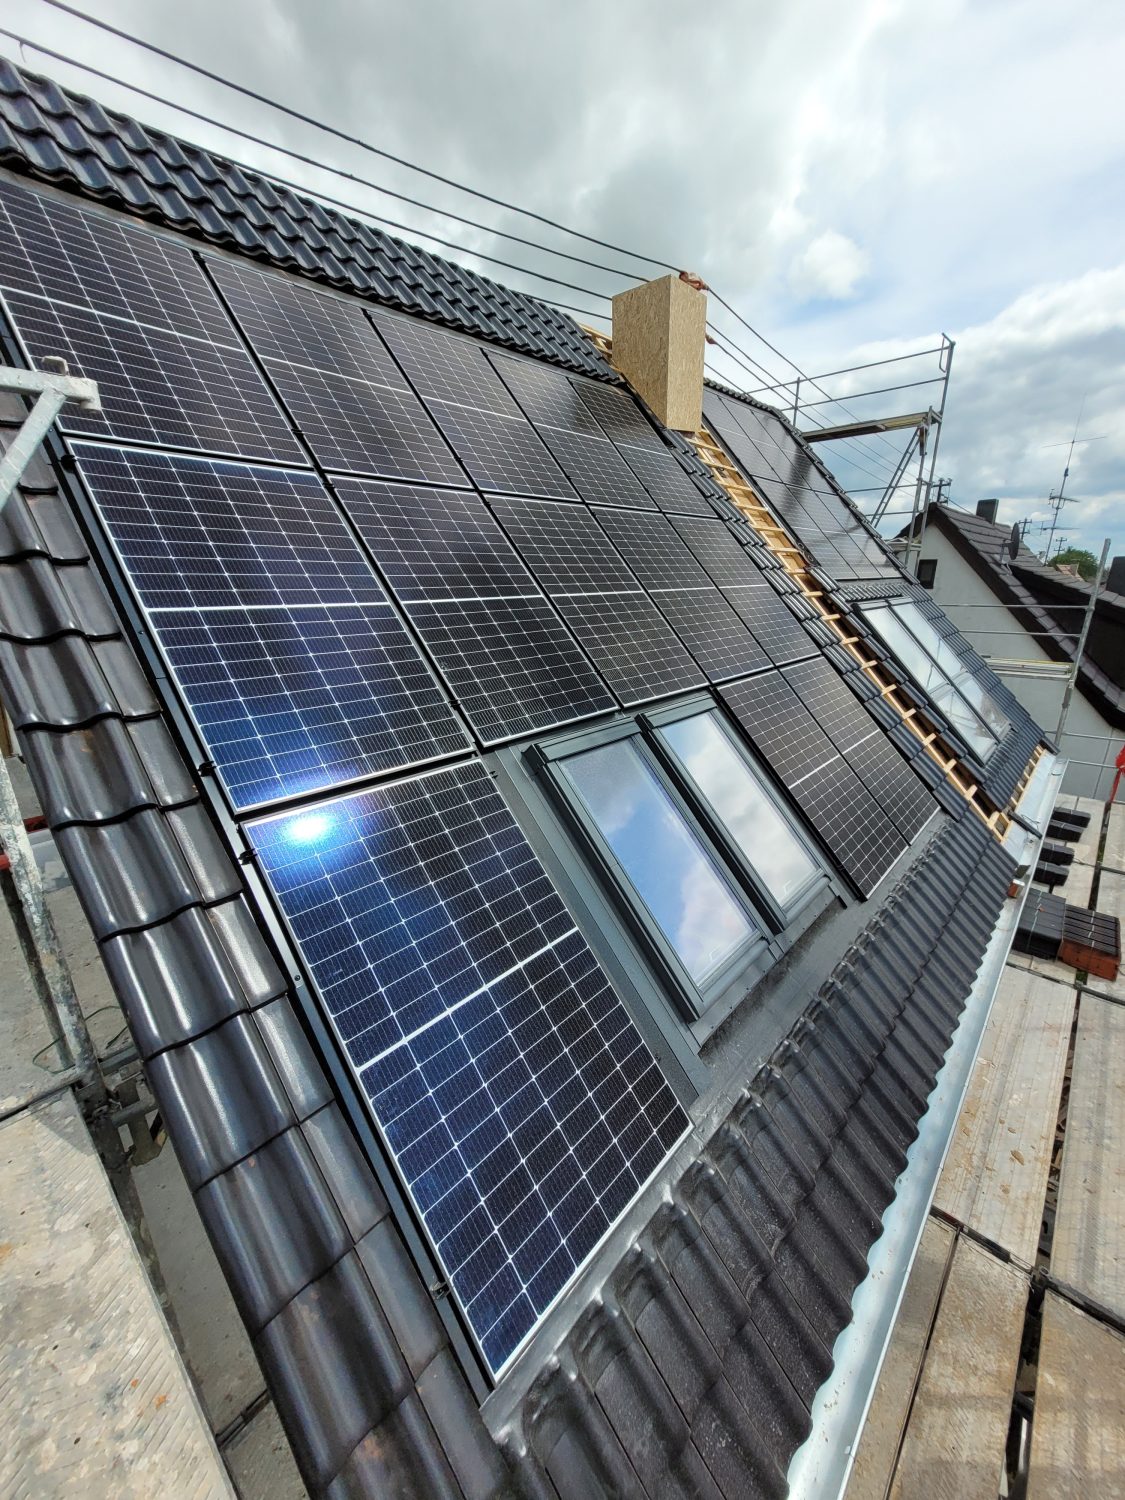 Mehr Solar aufs Dach: Auf der Verbundschule soll eine weitere Anlage installiert  werden